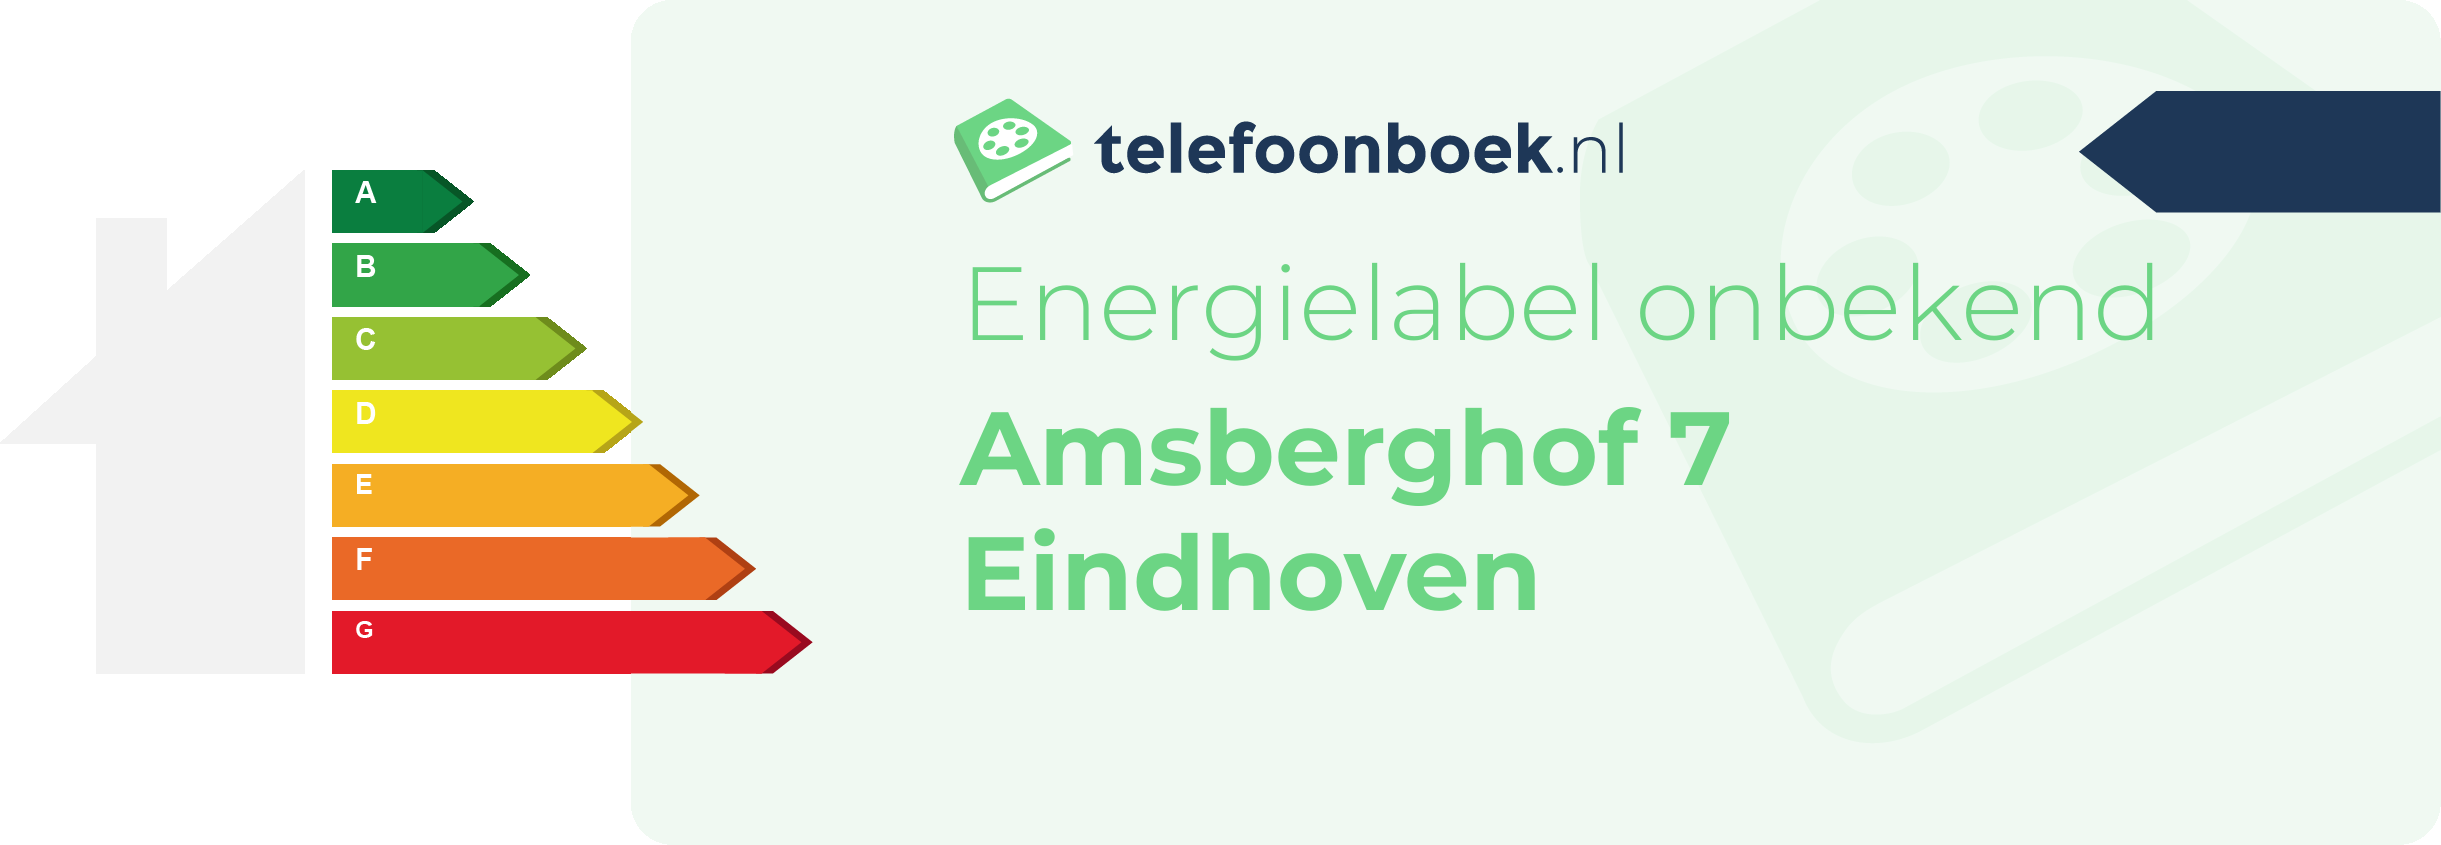 Energielabel Amsberghof 7 Eindhoven